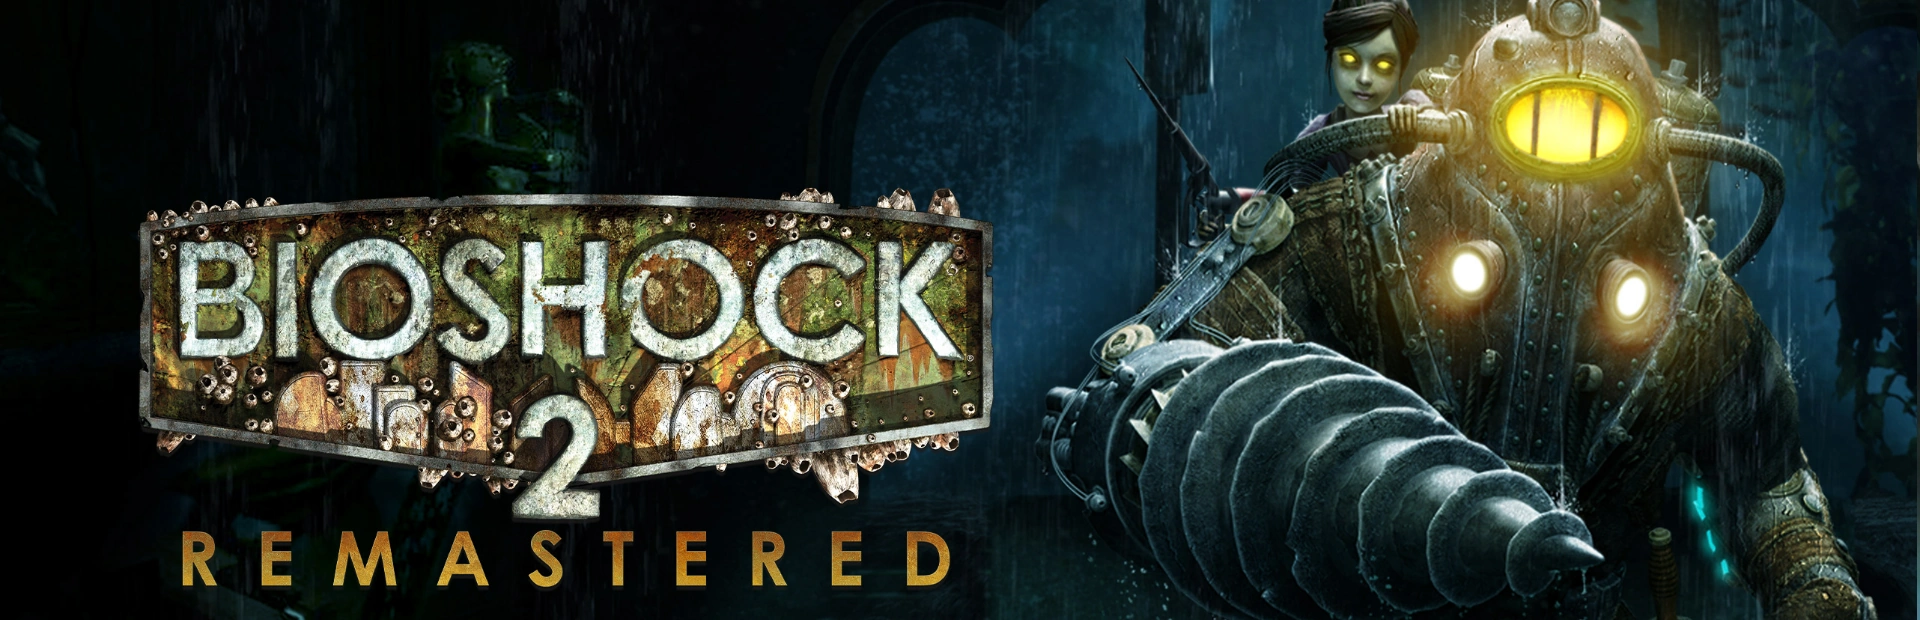 BioShock Remastered.banner2